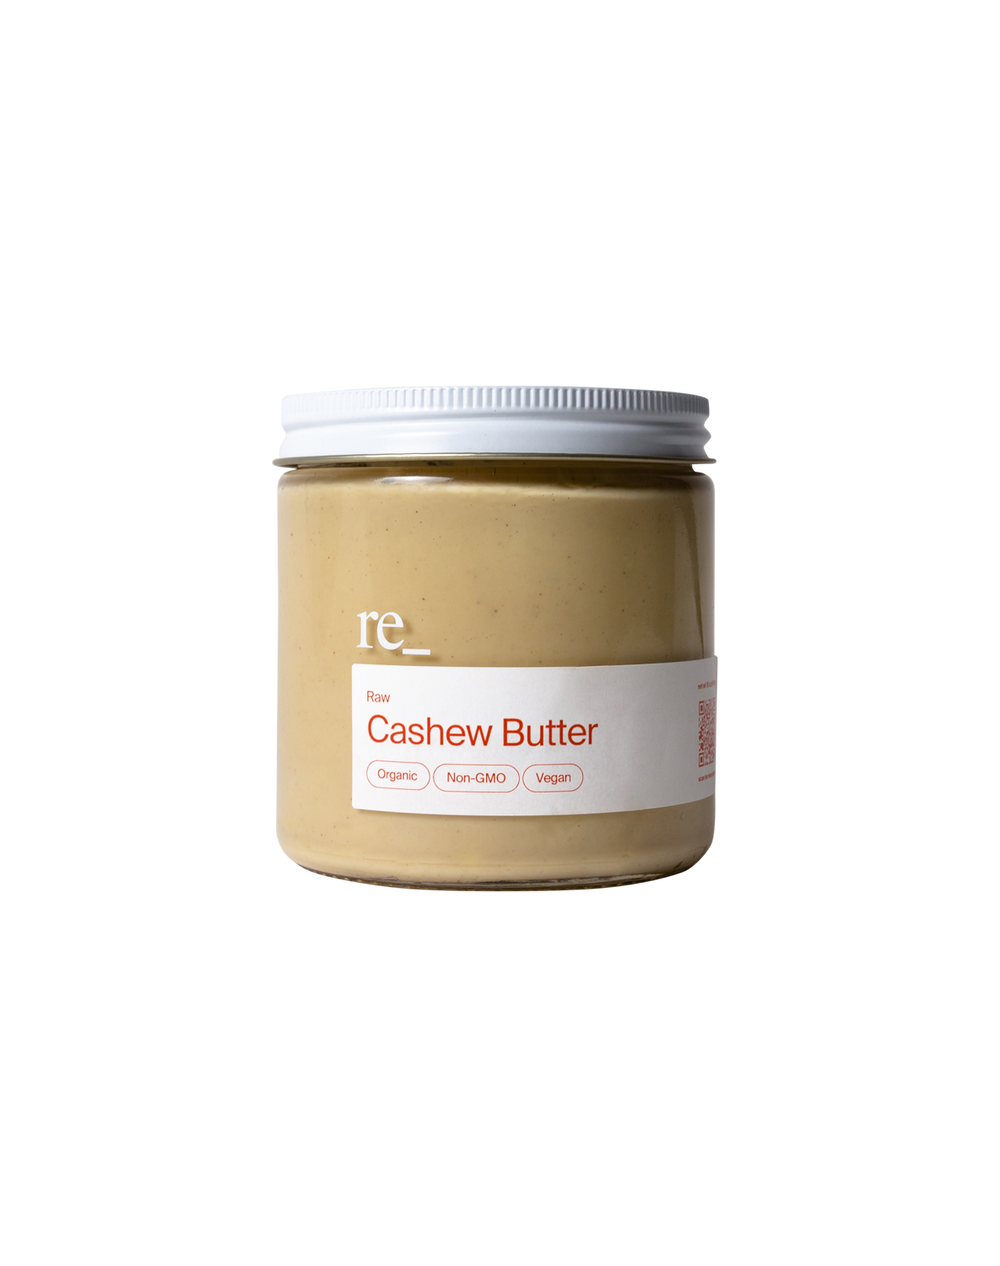 Cashew Butter, Raw, Jar re_